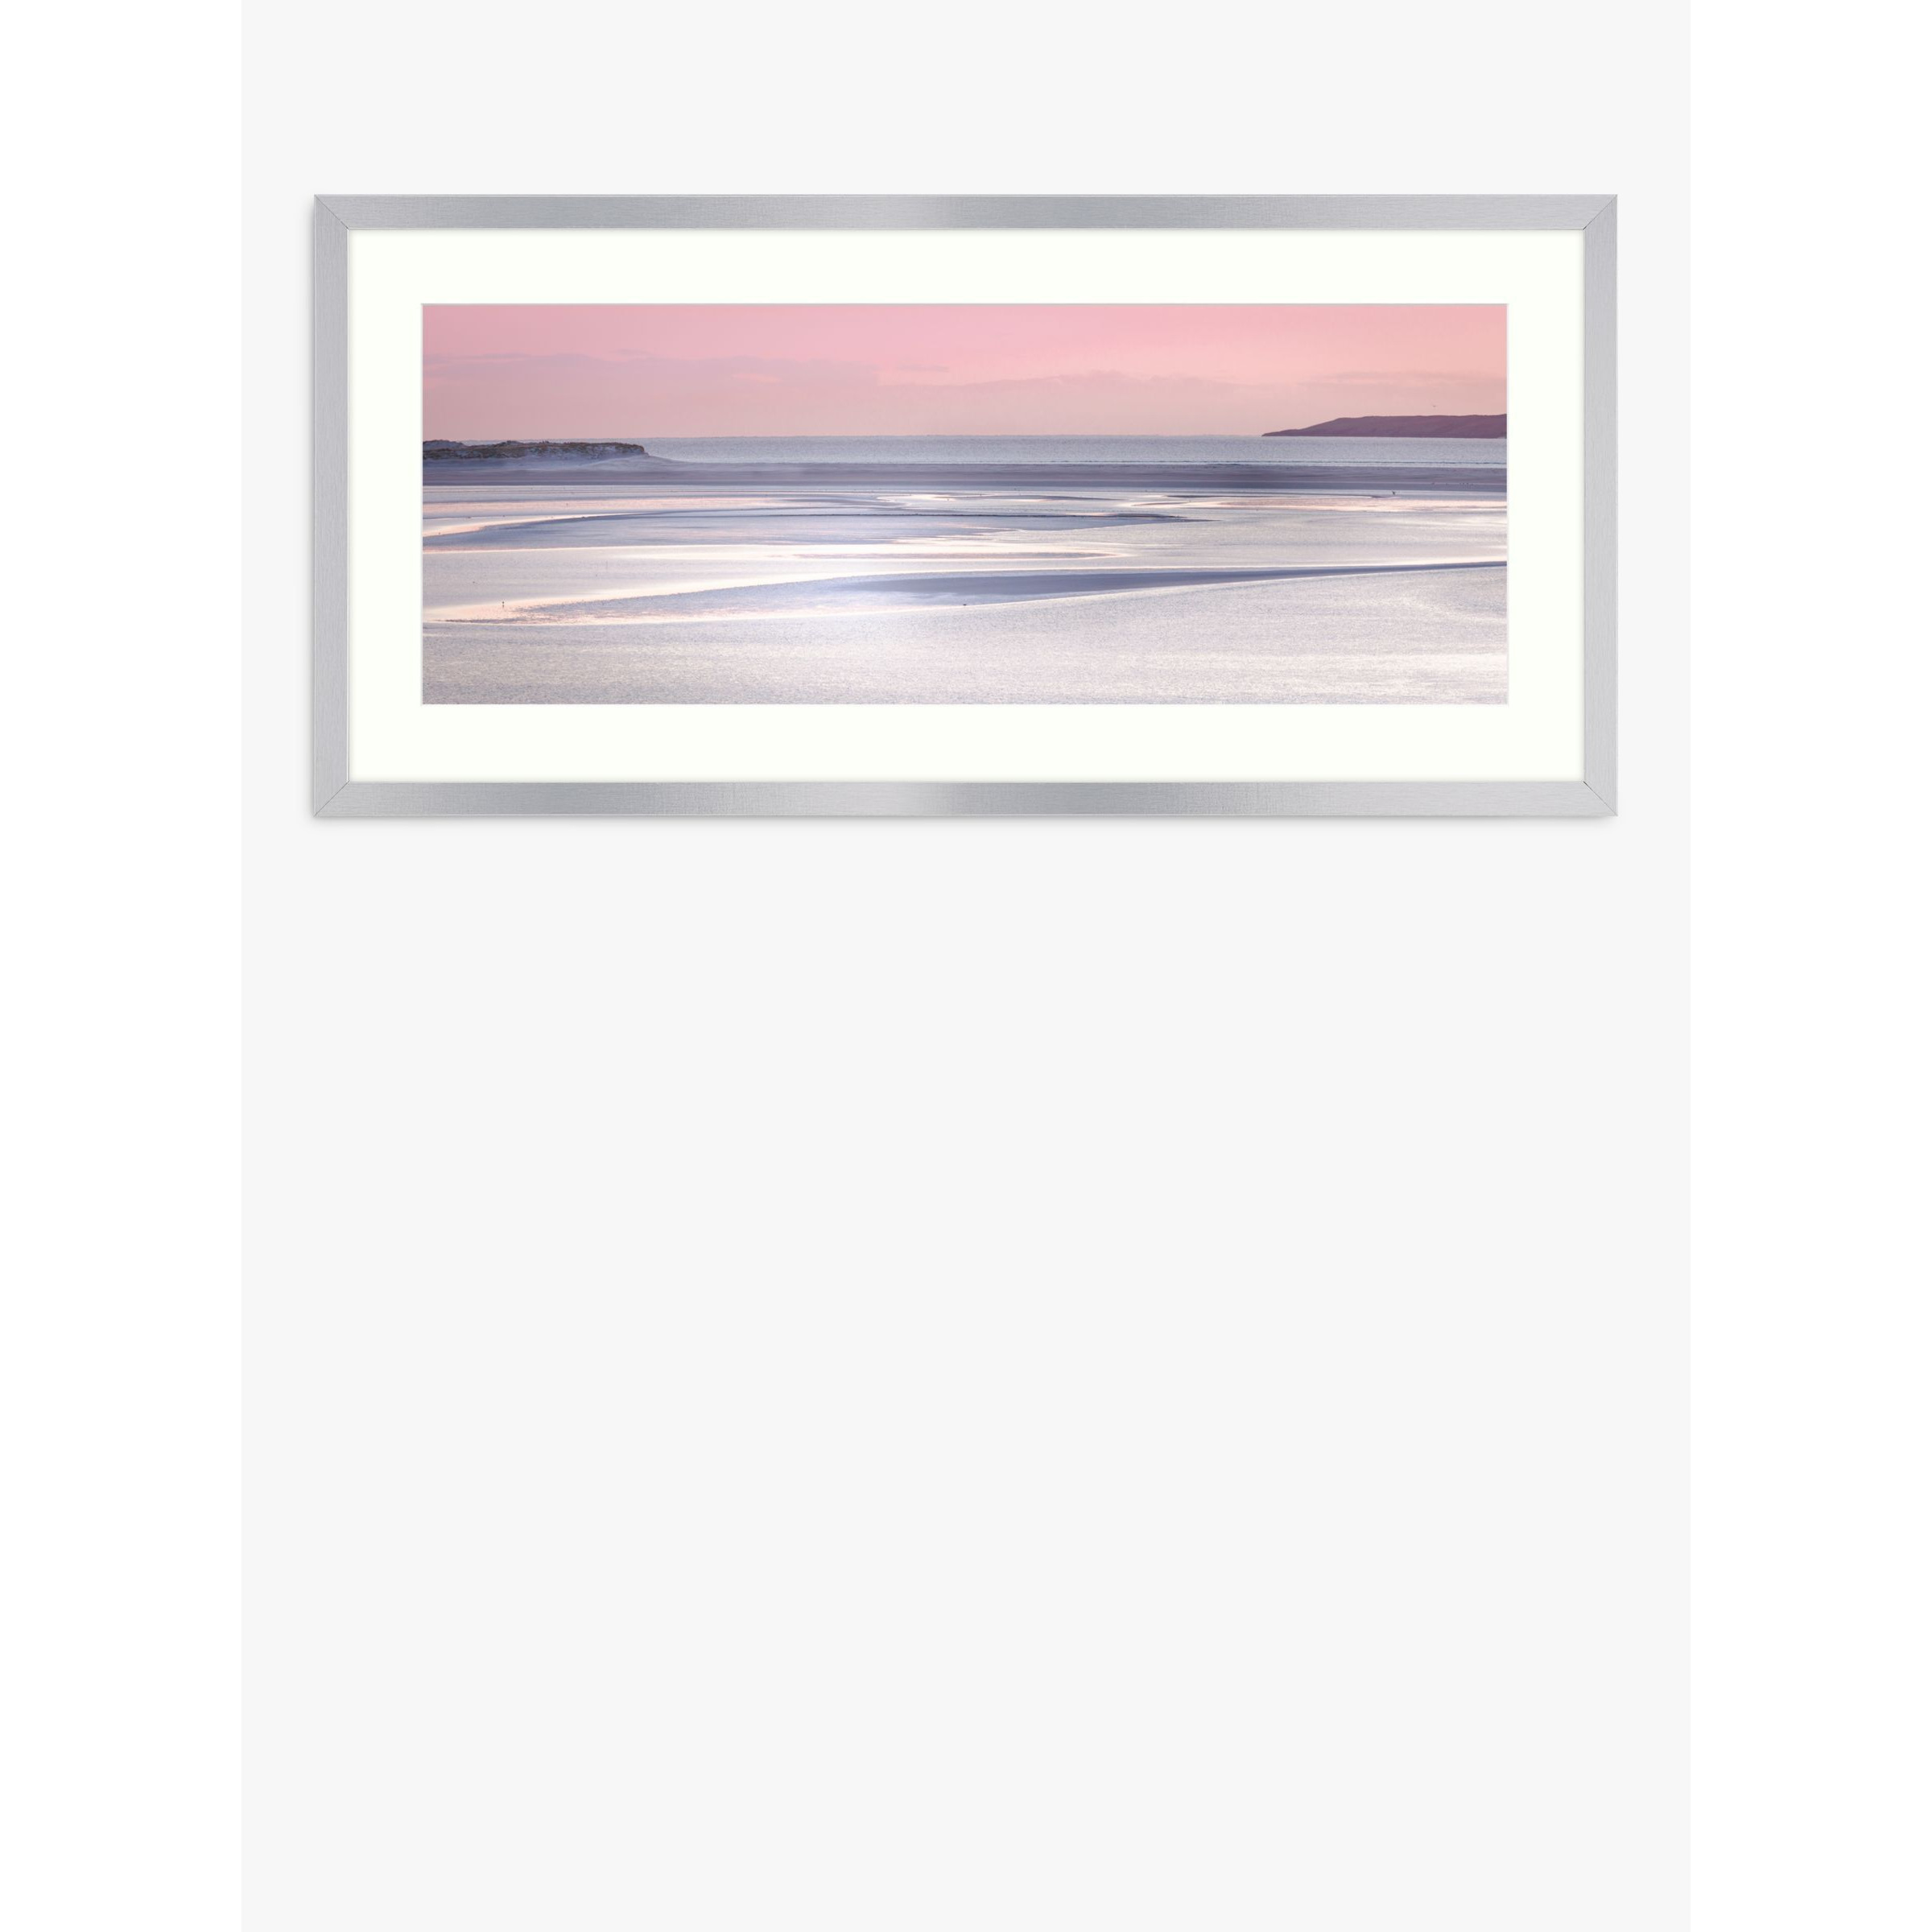 Lynne Douglas - 'Silver Sands' Framed Print & Mount, 49.5 x 104.5cm, Pink - image 1